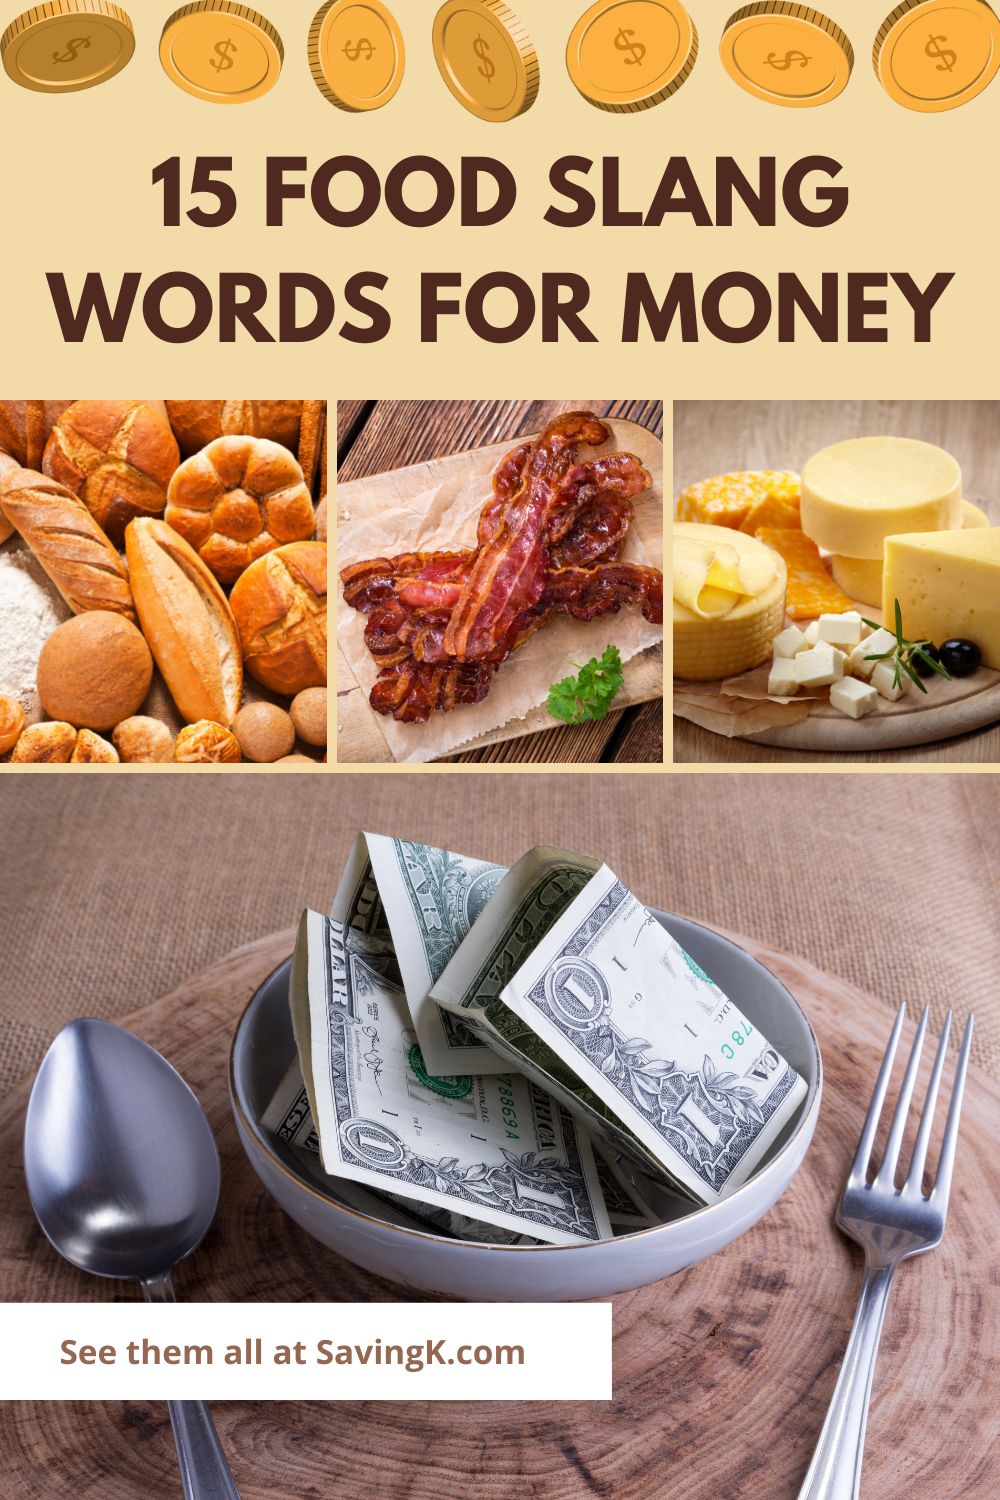 15 Food slang words for money